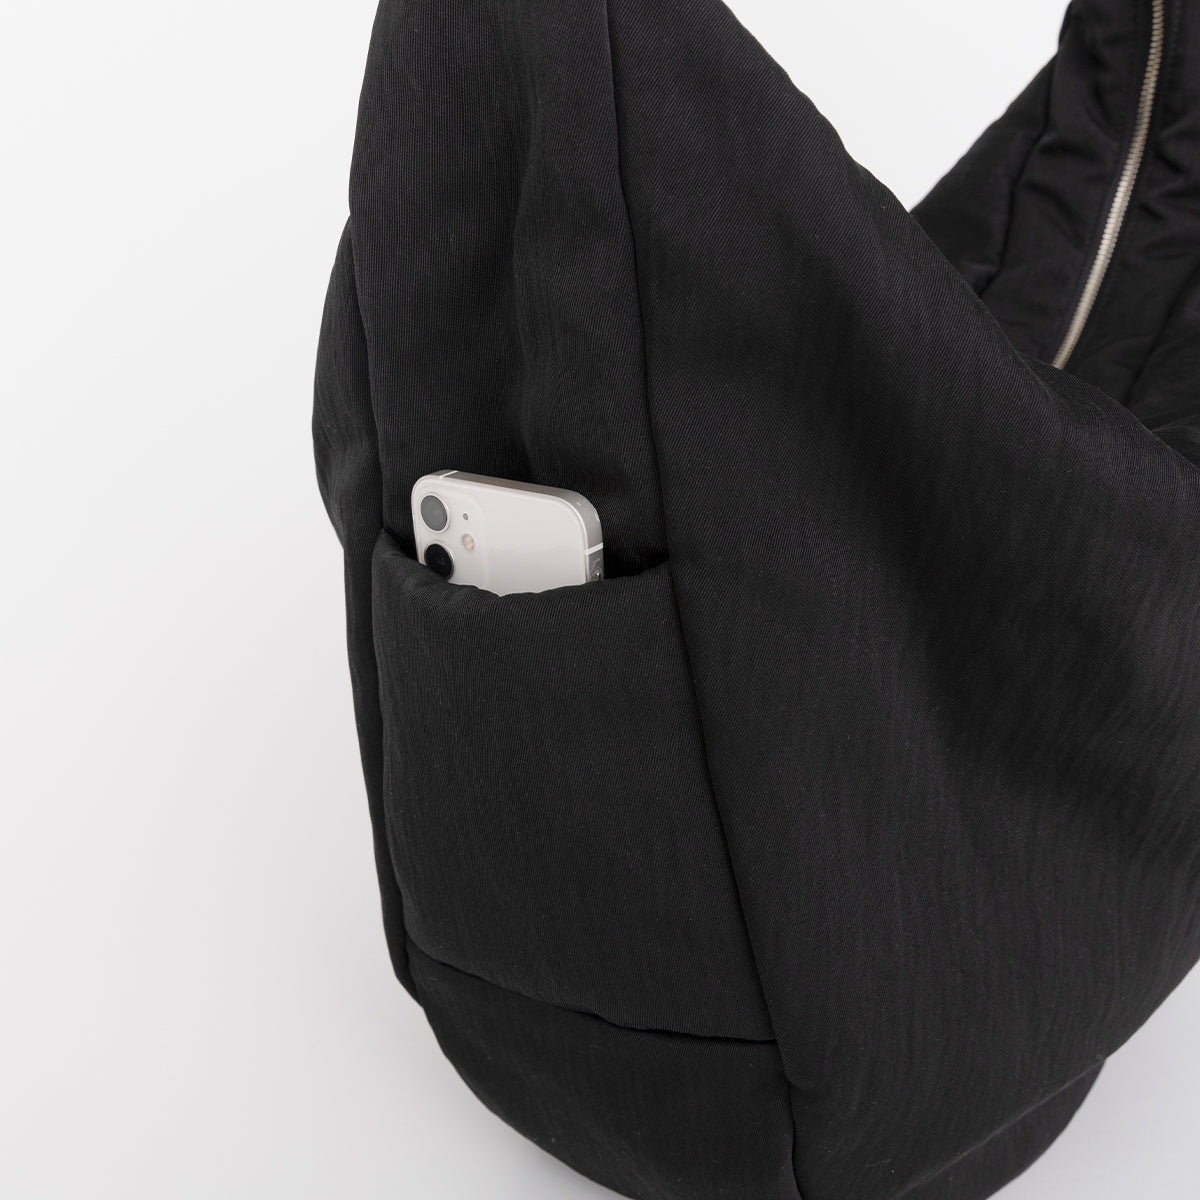 ANNIE PUFFER BIG MOON BAG / CERATO BRIGHT (アニーパファービッグムーンバッグ) - ITTI (イッチ) | カバン かばん ショルダー 肩掛け 斜め 中綿 ナイロン ブラック 黒 撥水 ブランド ドメスティック メンズ レディース